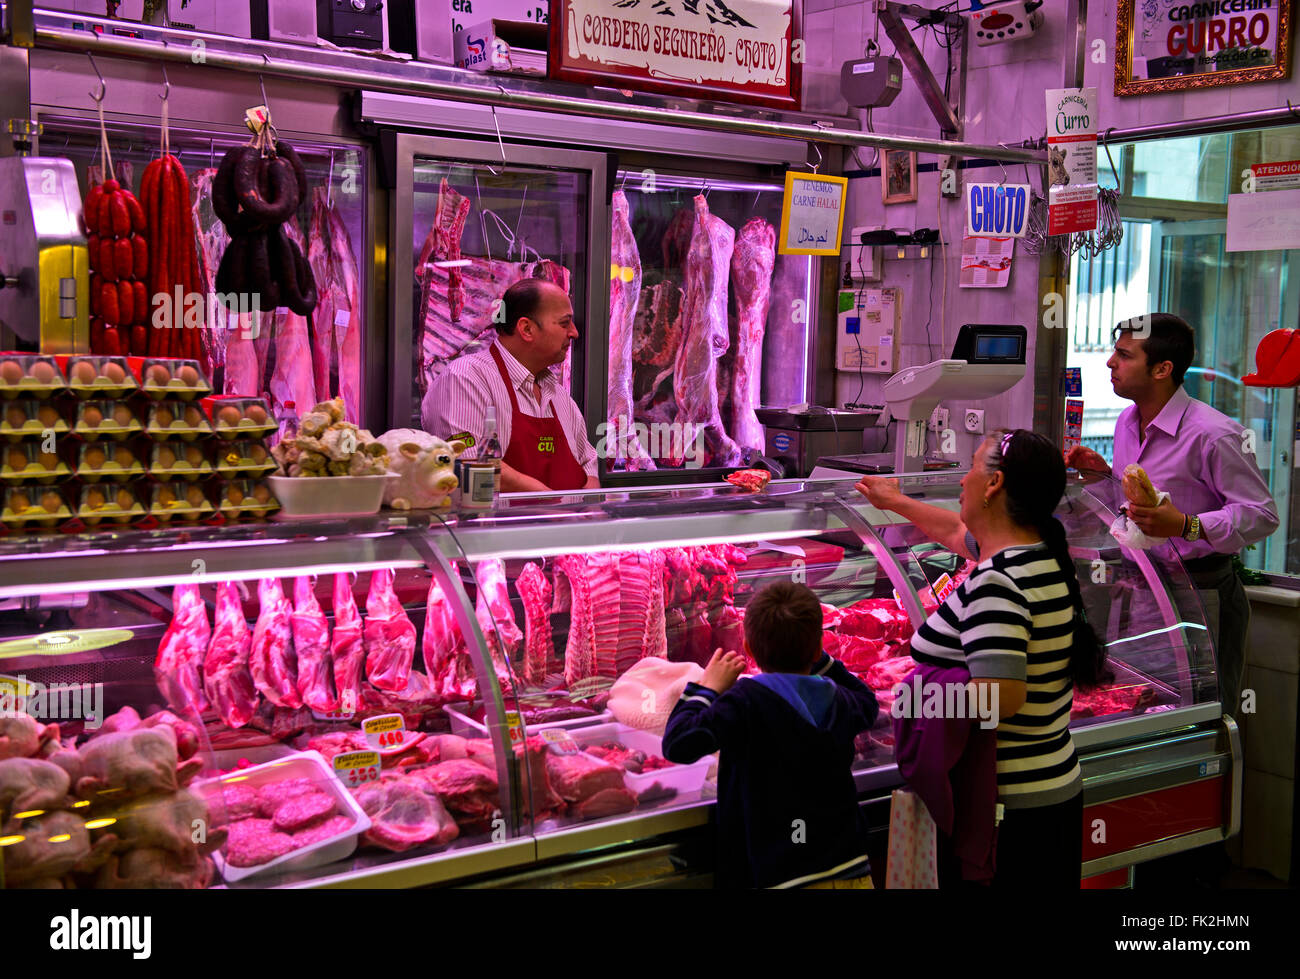 Box pour viande et charcuterie au marché vert, Granada, Espagne Banque D'Images